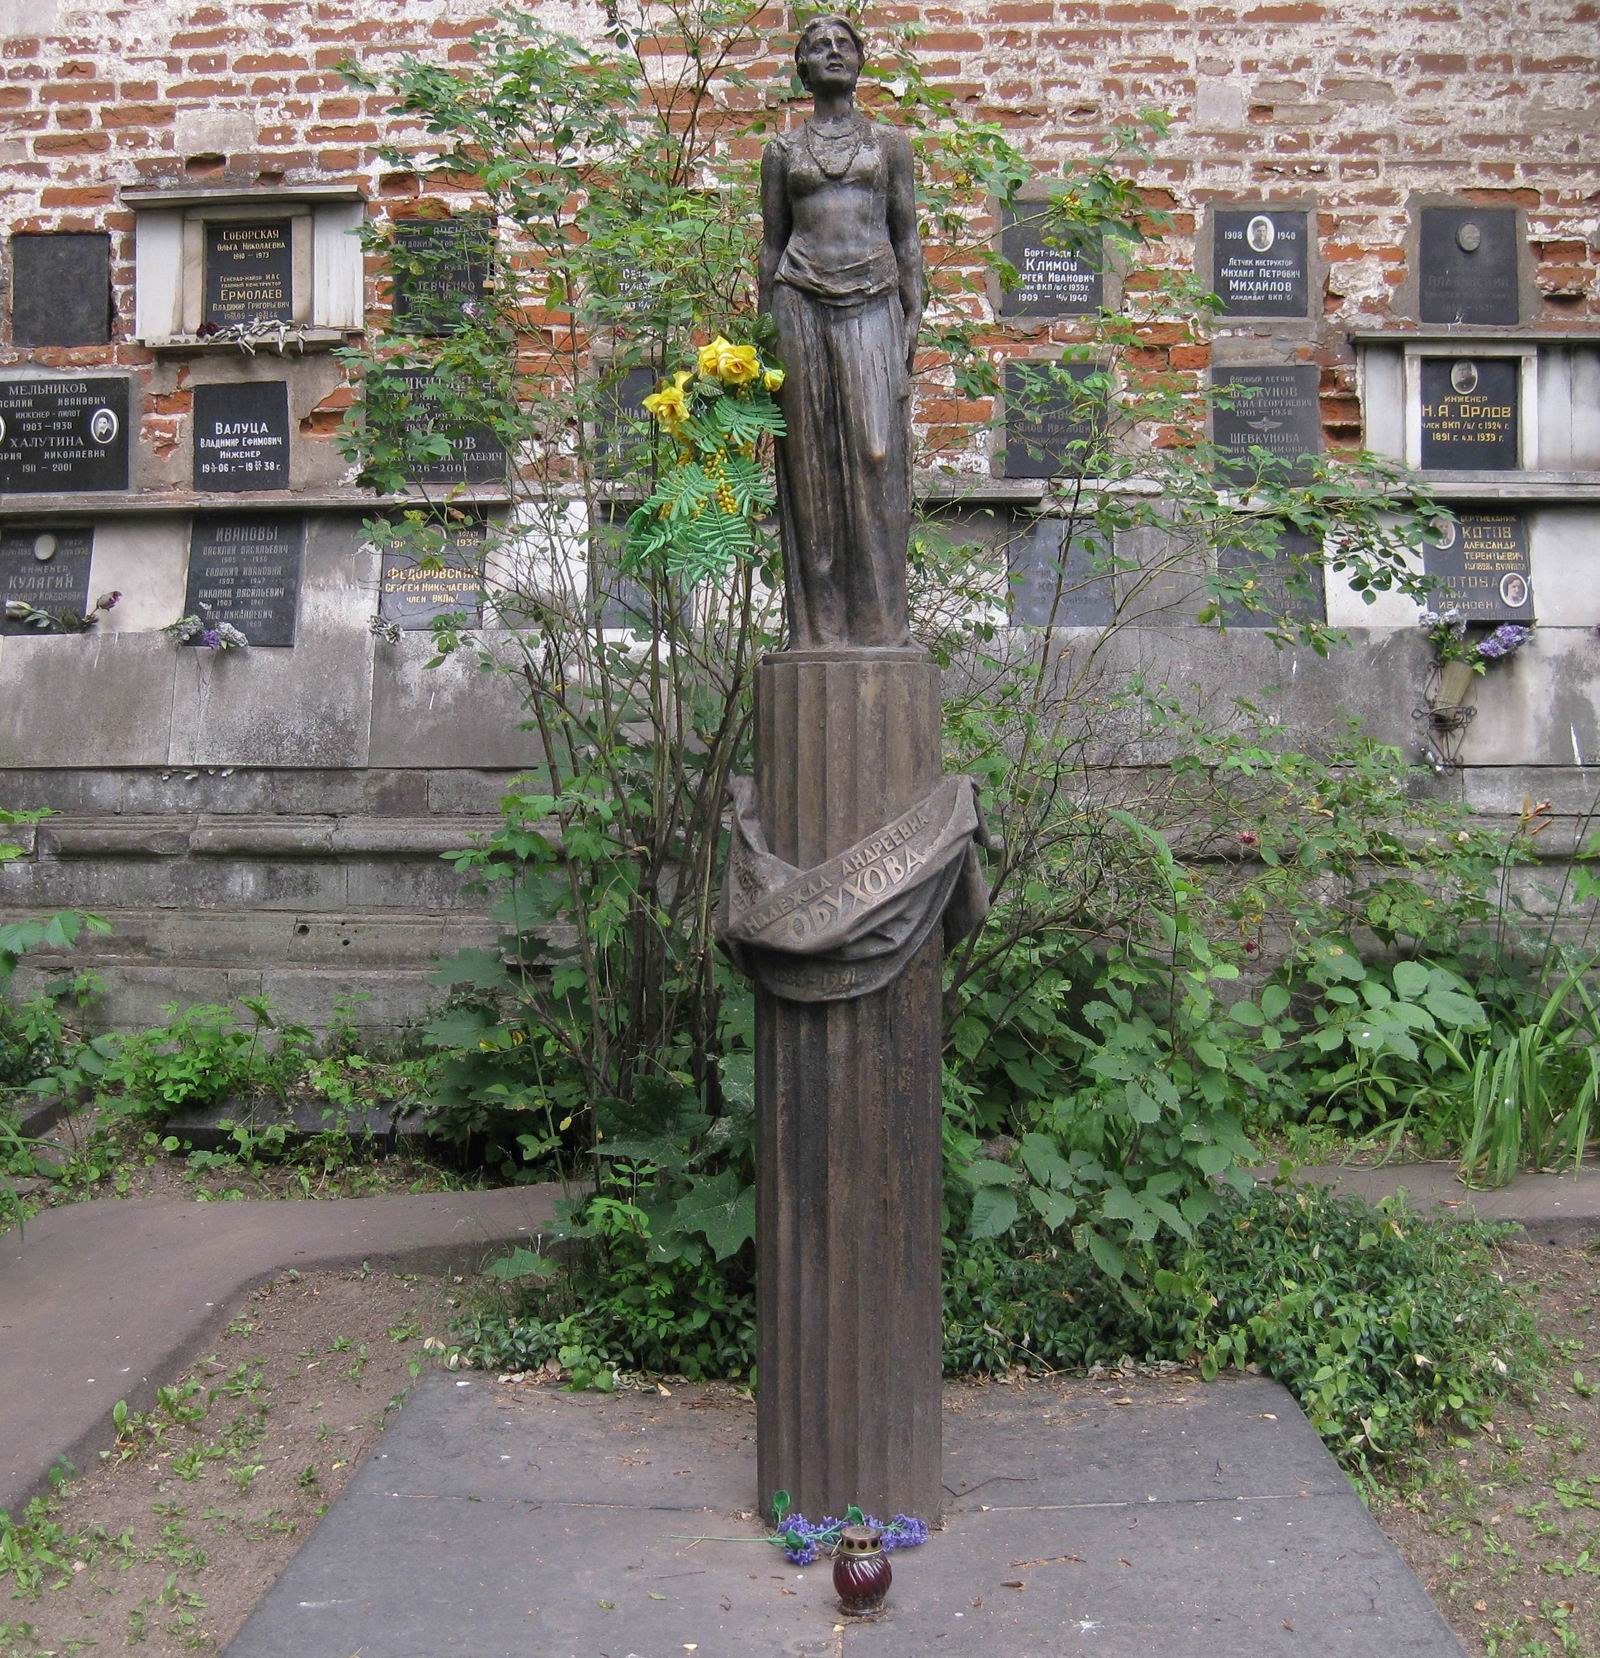 Памятник на могиле Обуховой Н.А.(1886-1961), ск. М.Аникушин, арх. Ф.Гепенер, на Новодевичьем кладбище (3-65-9). Нажмите левую кнопку мыши чтобы увидеть деталь памятника.